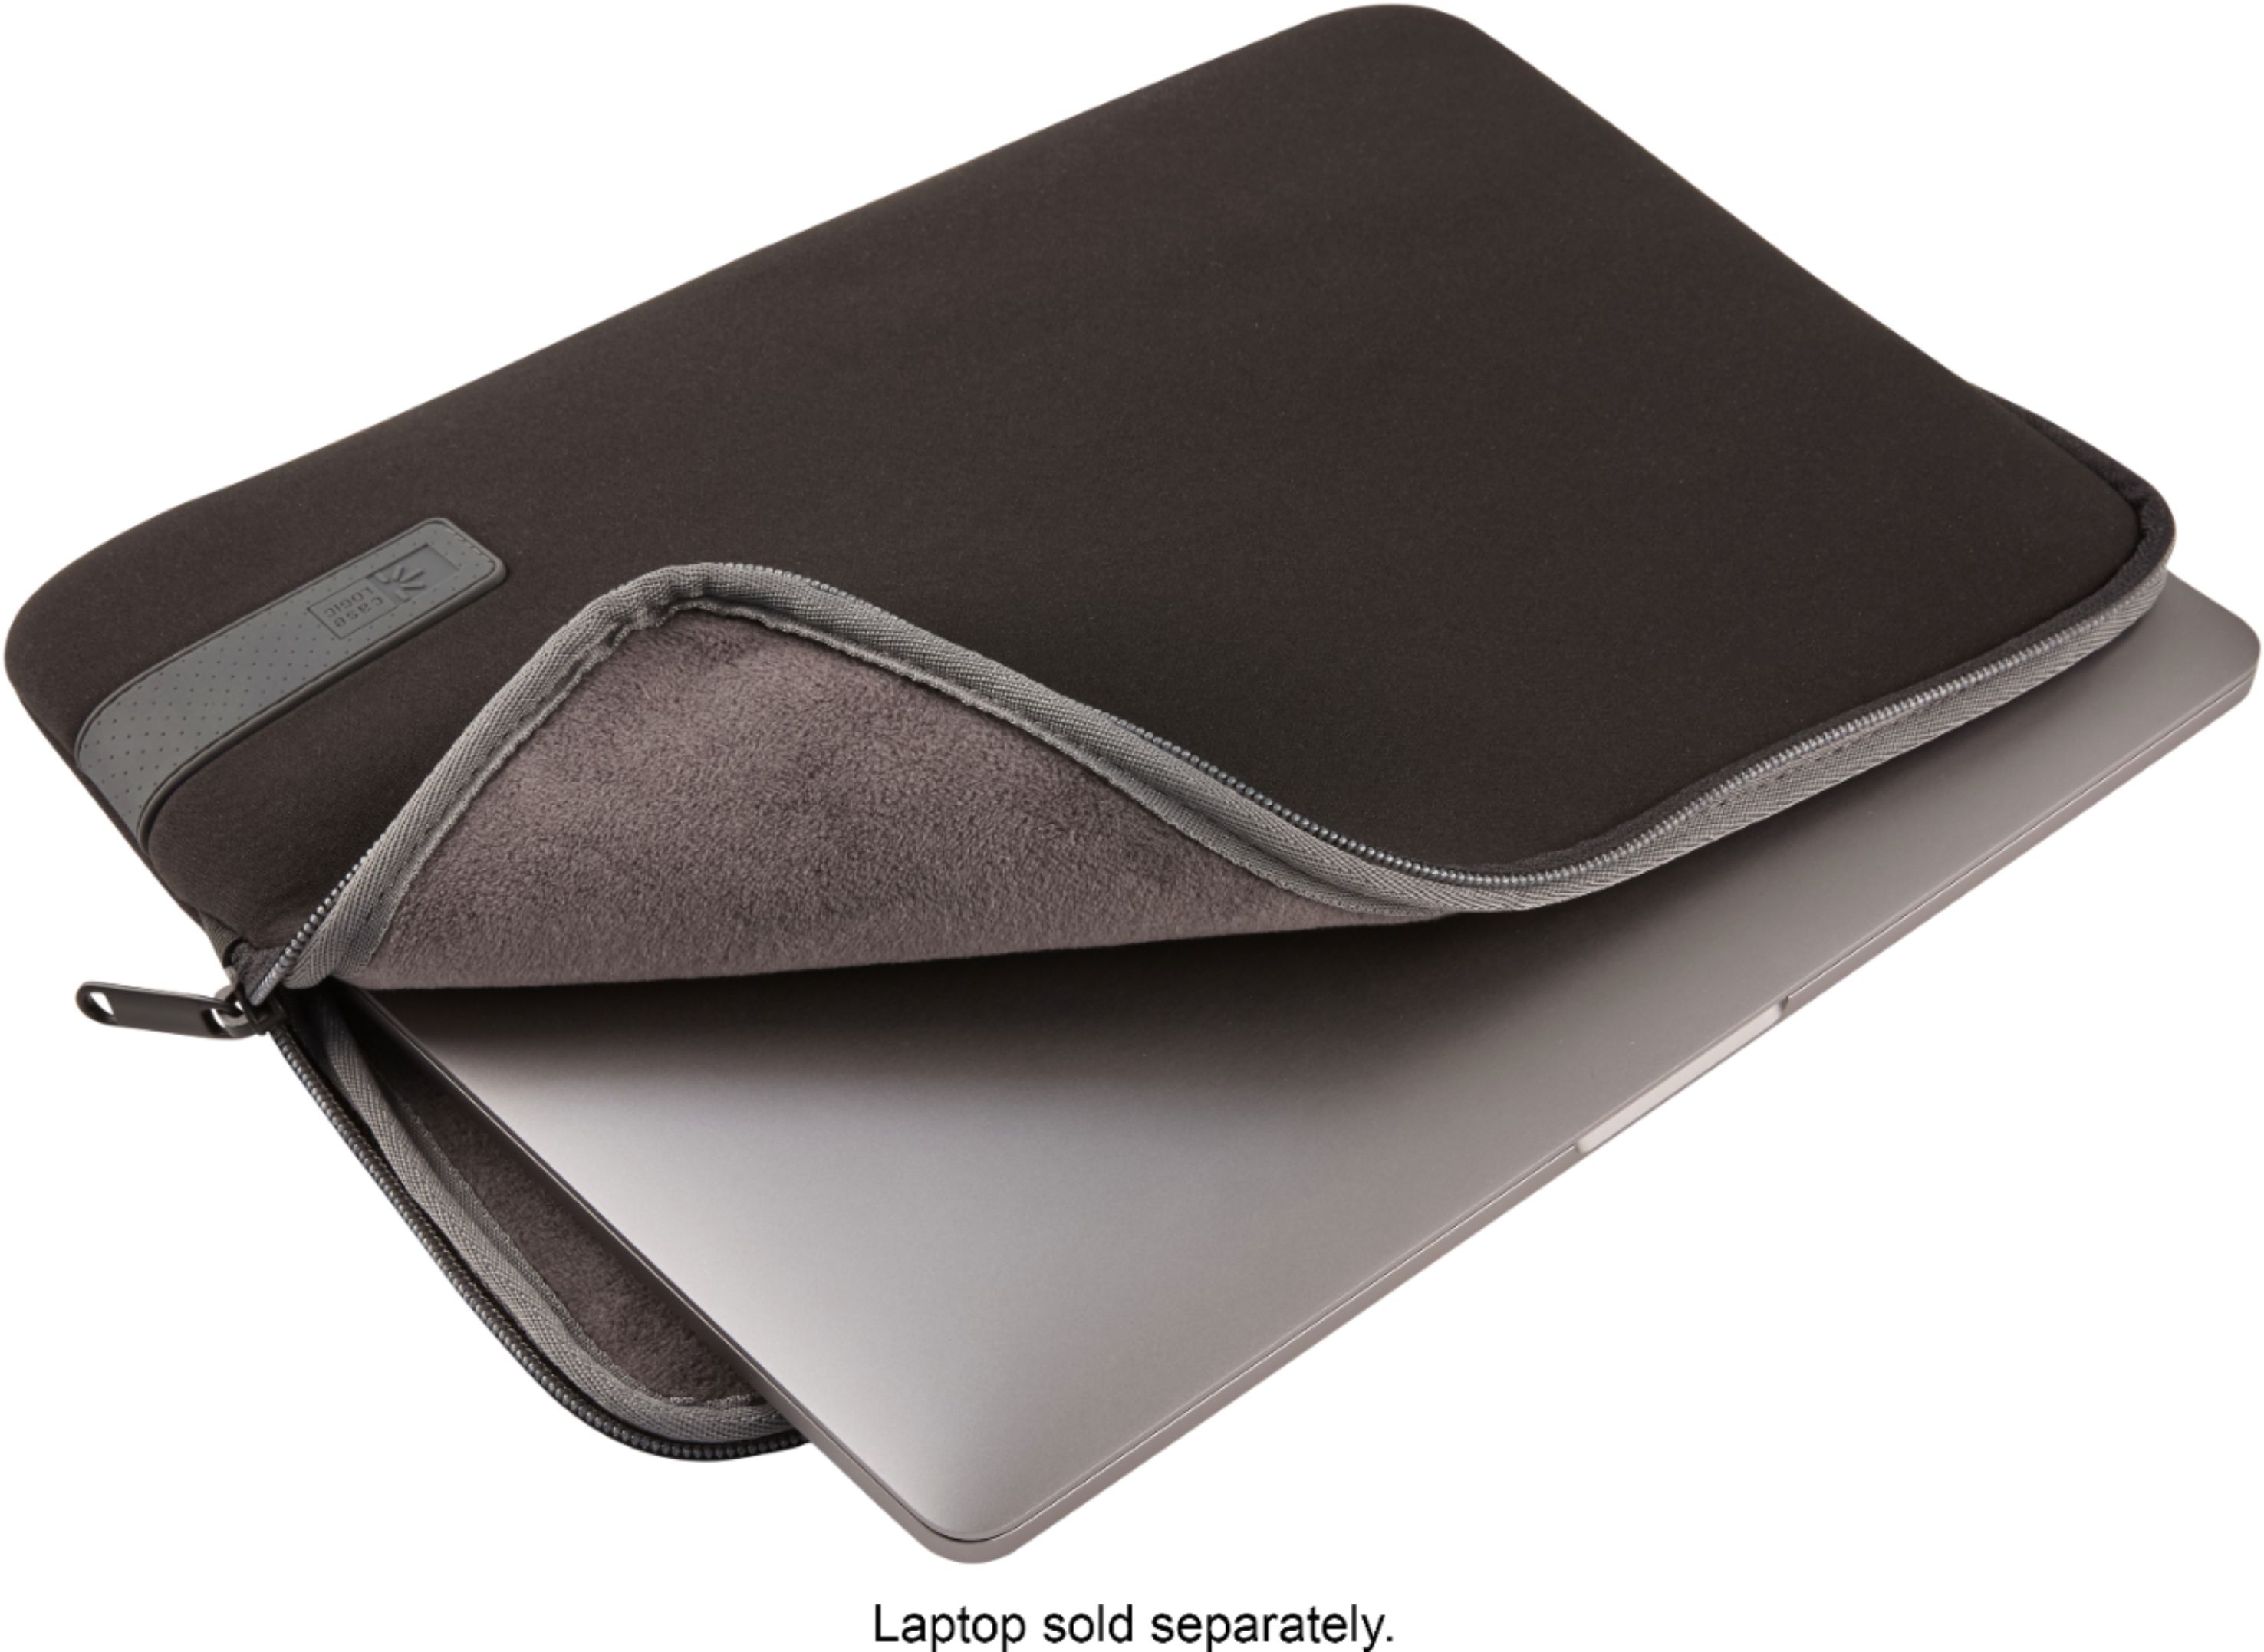 Macbook Air Top Opening Black Soft Memory Foam Laptop Sleeve 13' 